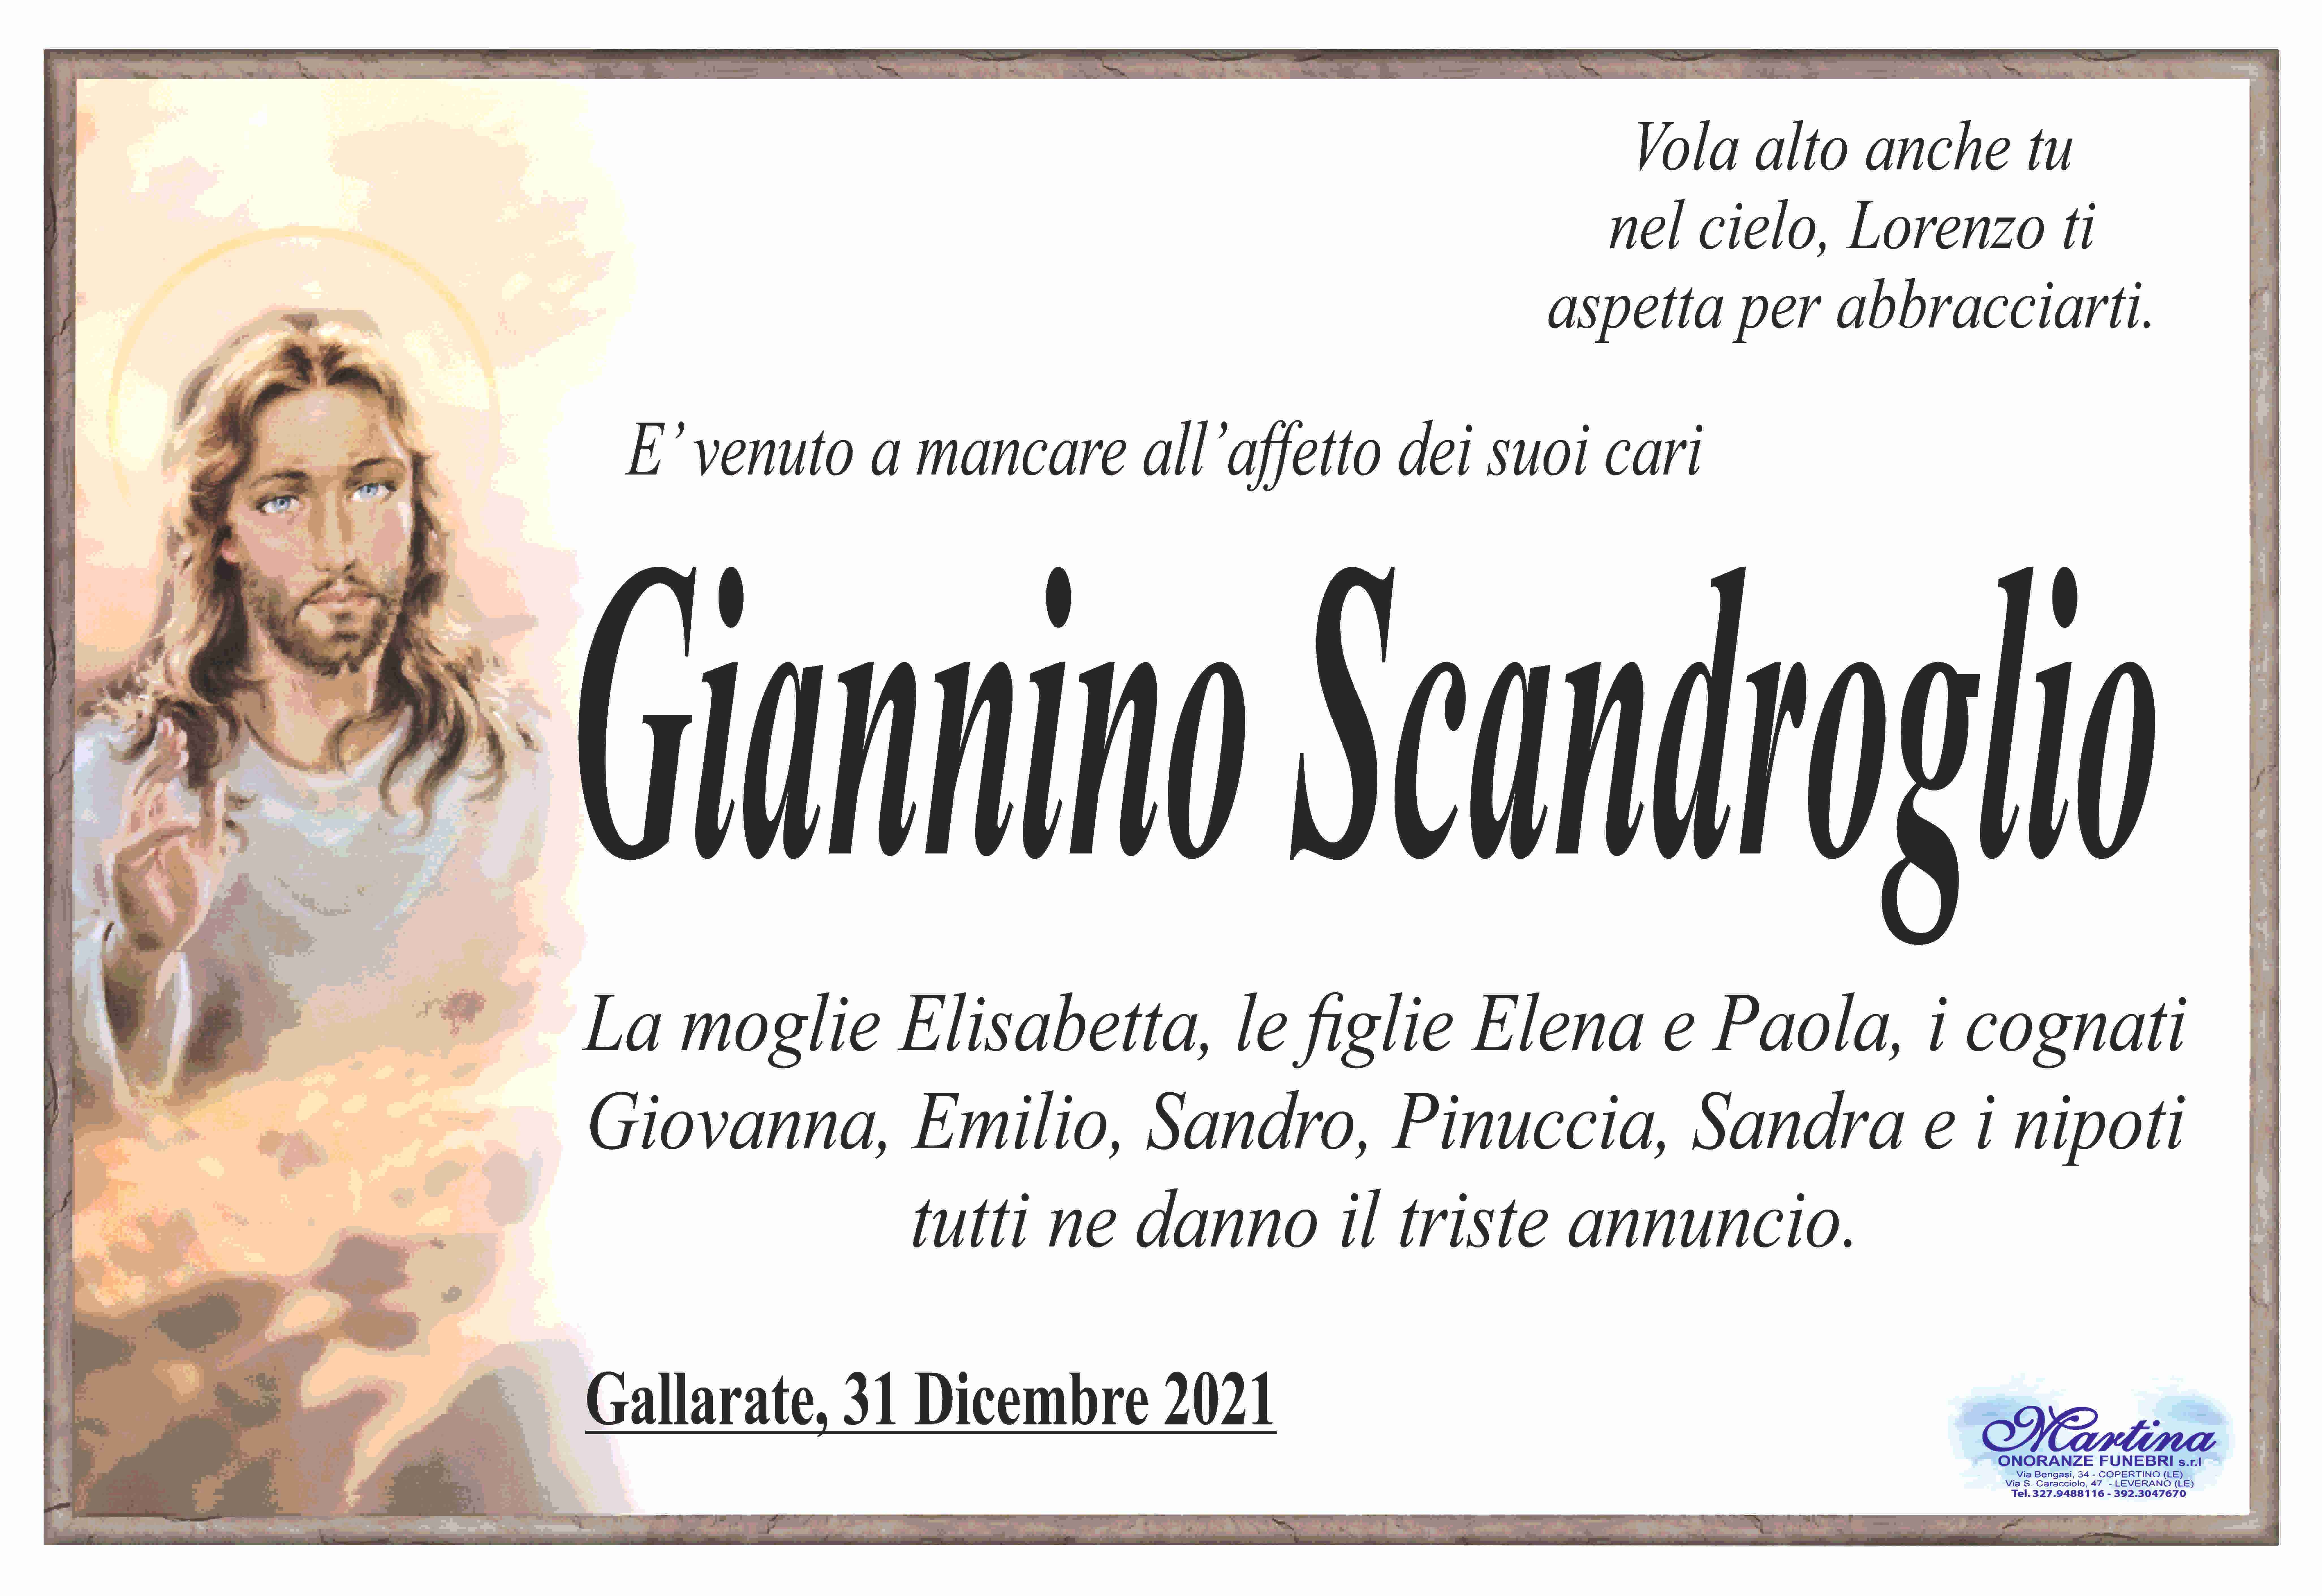 Giannino Scandroglio